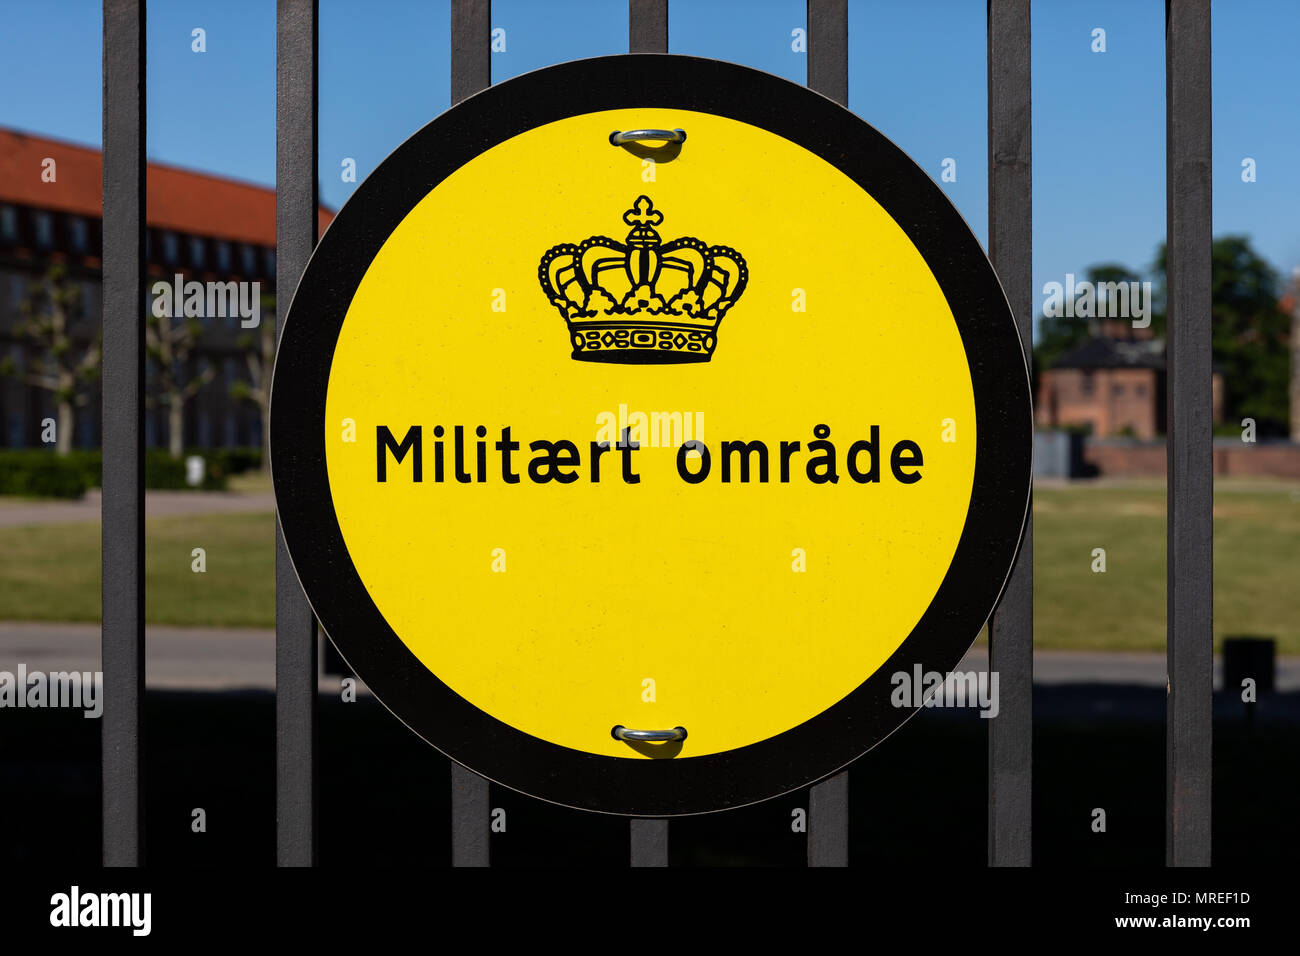 'Militært område' ('Military area') sign outside Rosenborg Castle, Copenhagen, Denmark Stock Photo